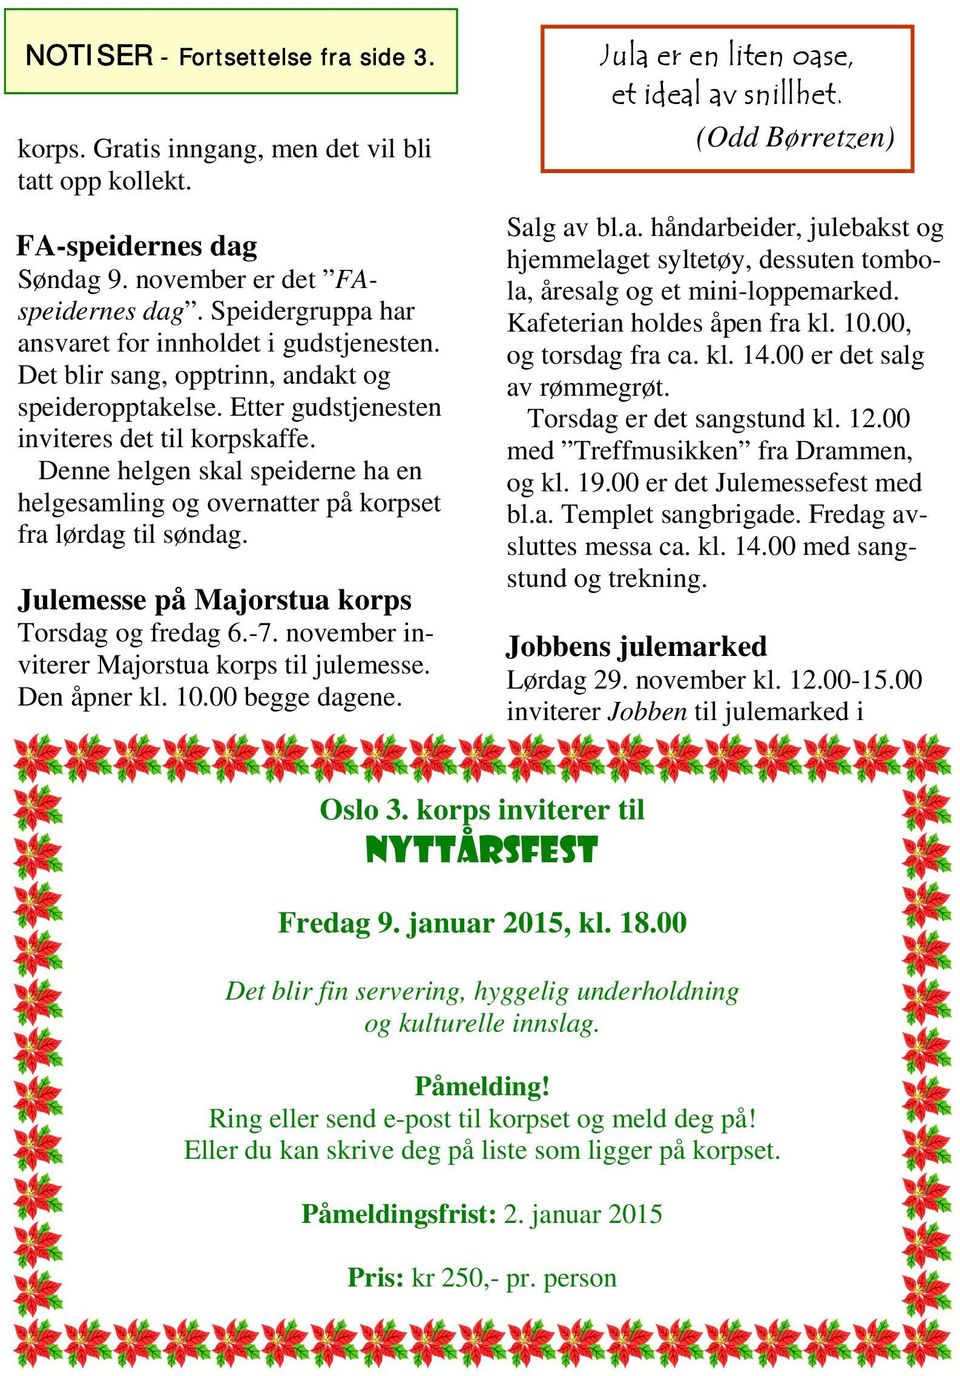 Denne helgen skal speiderne ha en helgesamling og overnatter på korpset fra lørdag til søndag. Julemesse på Majorstua korps Torsdag og fredag 6.-7. november inviterer Majorstua korps til julemesse.